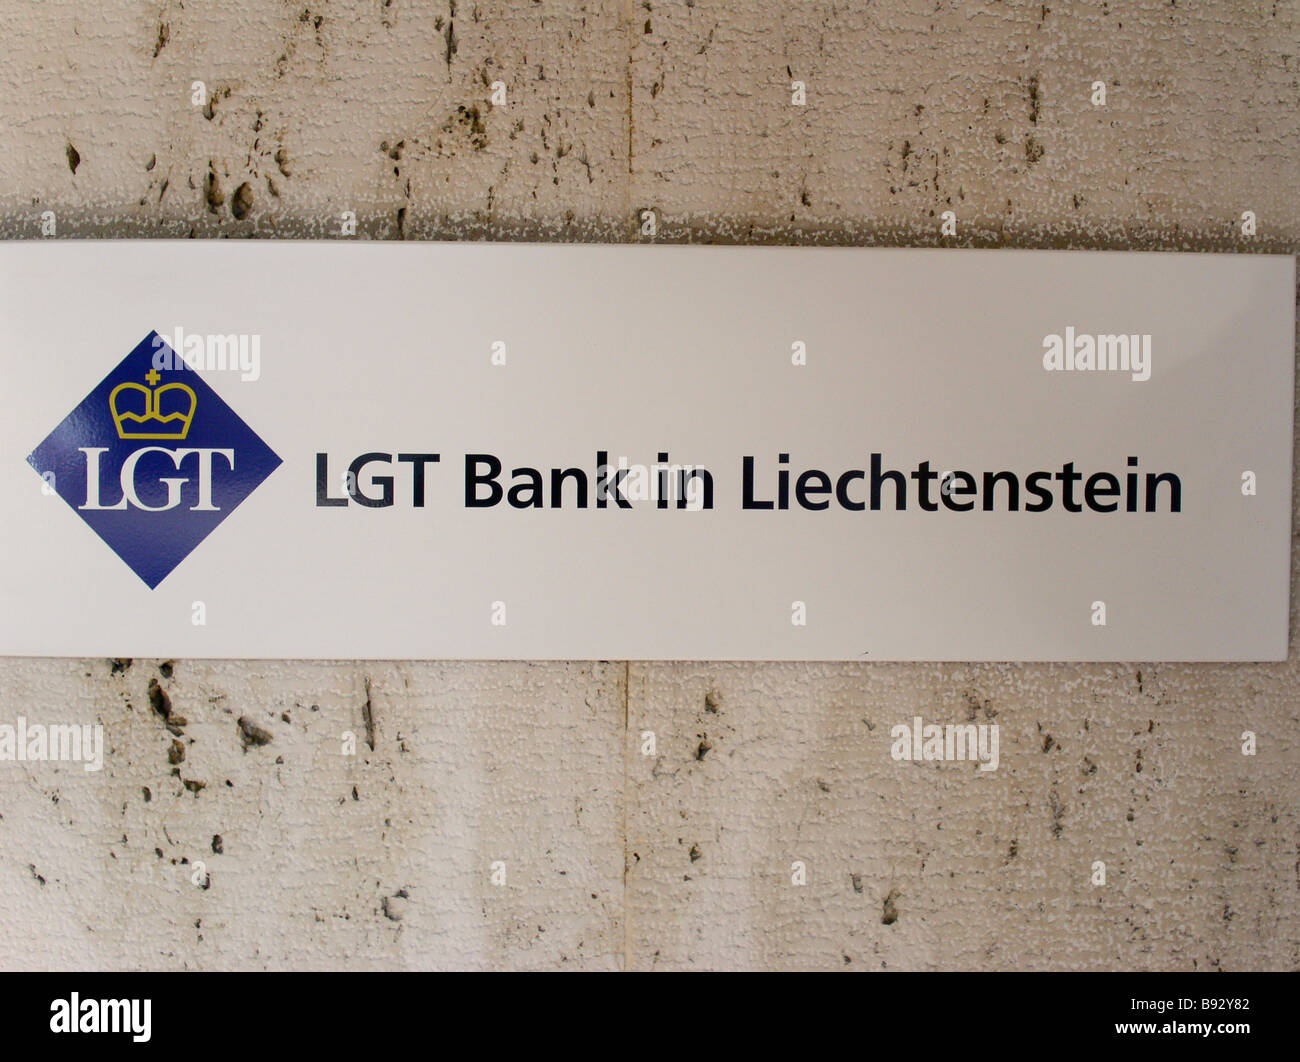 Li The Principality of Liechtenstein Capital Vaduz The LGT Bank in Liechtenstein Vaduz Herrengasse 12 Stock Photo